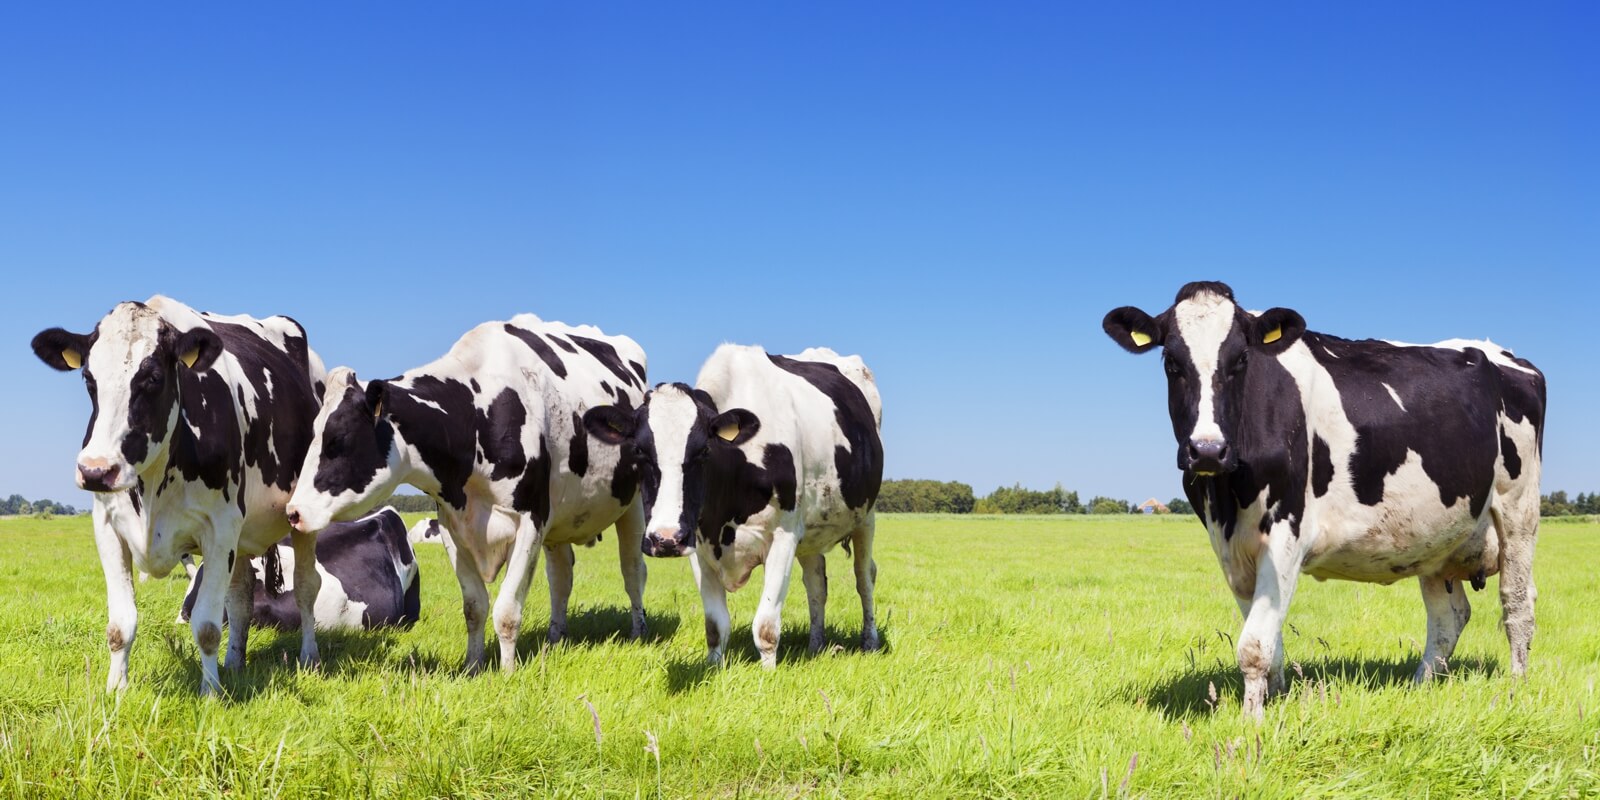 Vlies Tapete Fototapete Panorama Kuh Herde Rind Holsteiner